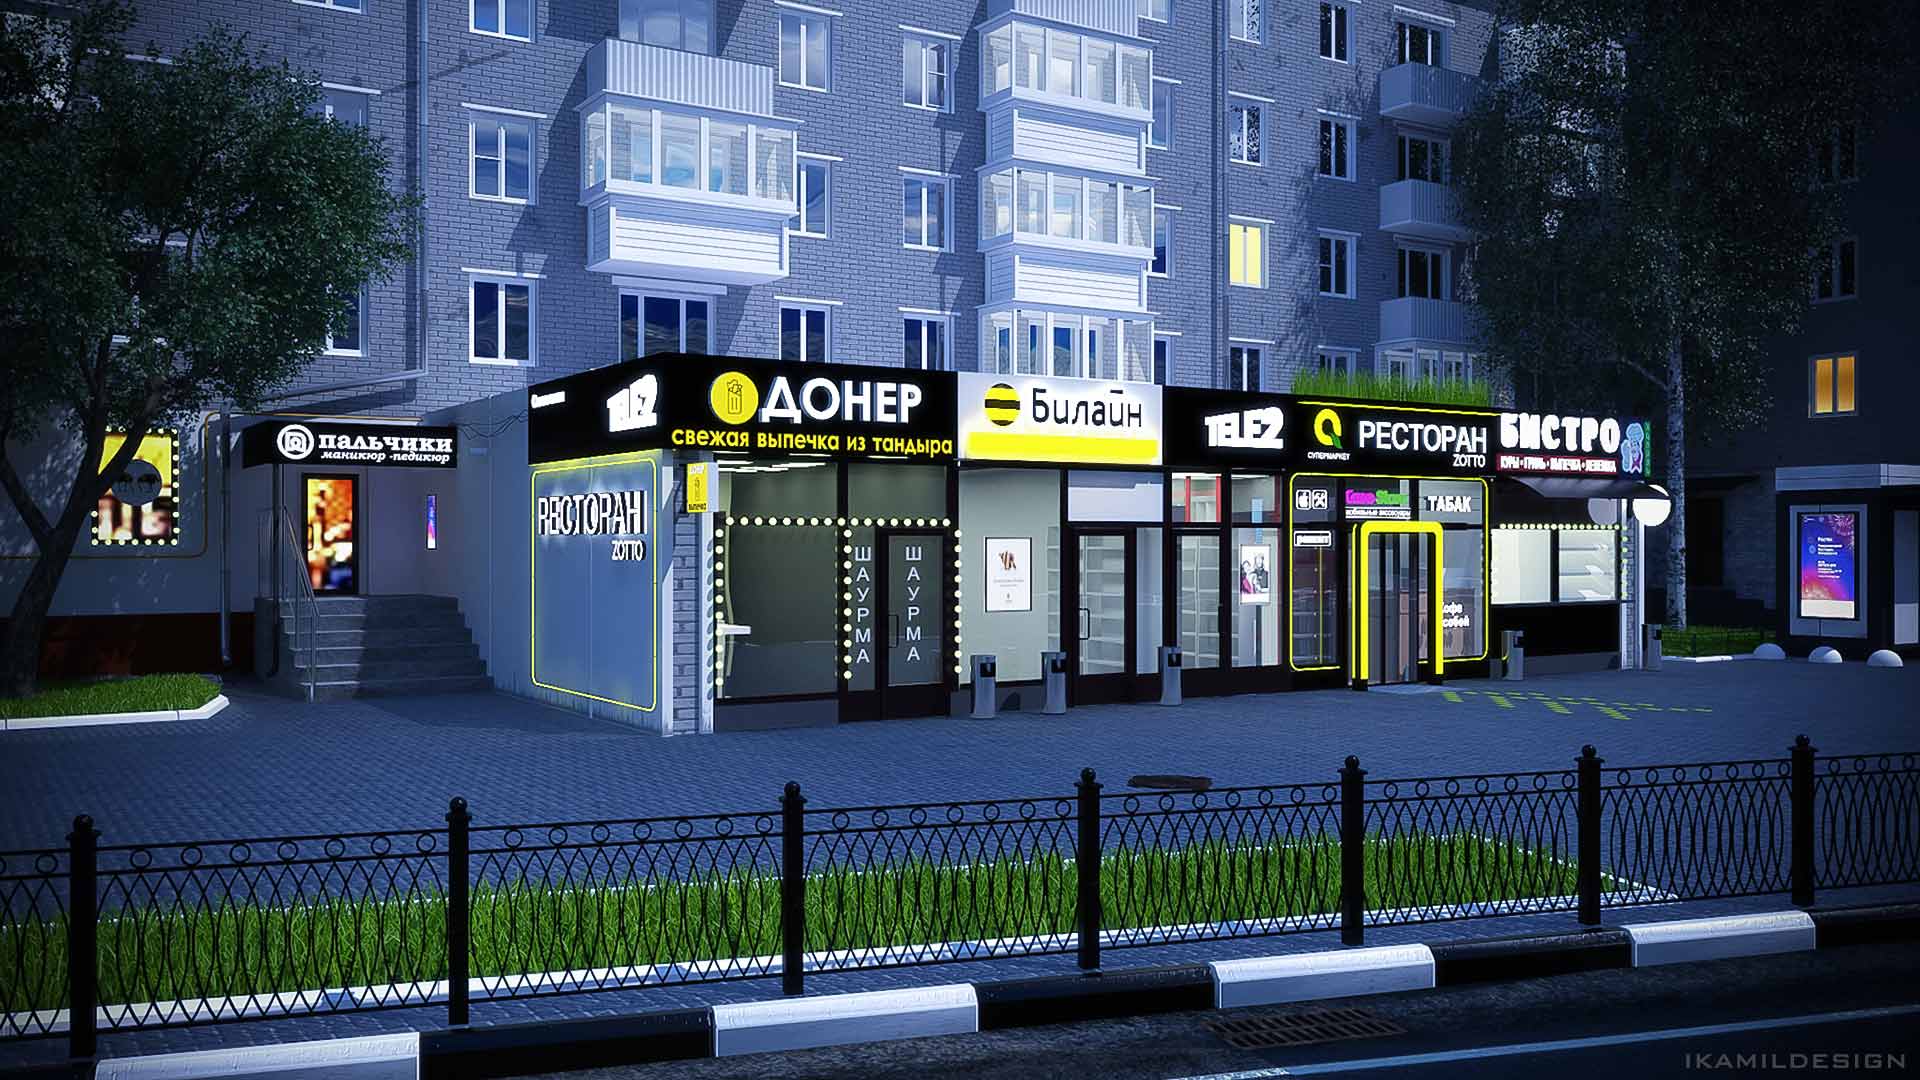 проект освещения фасада ресторана зотто в москве, ikamildesign